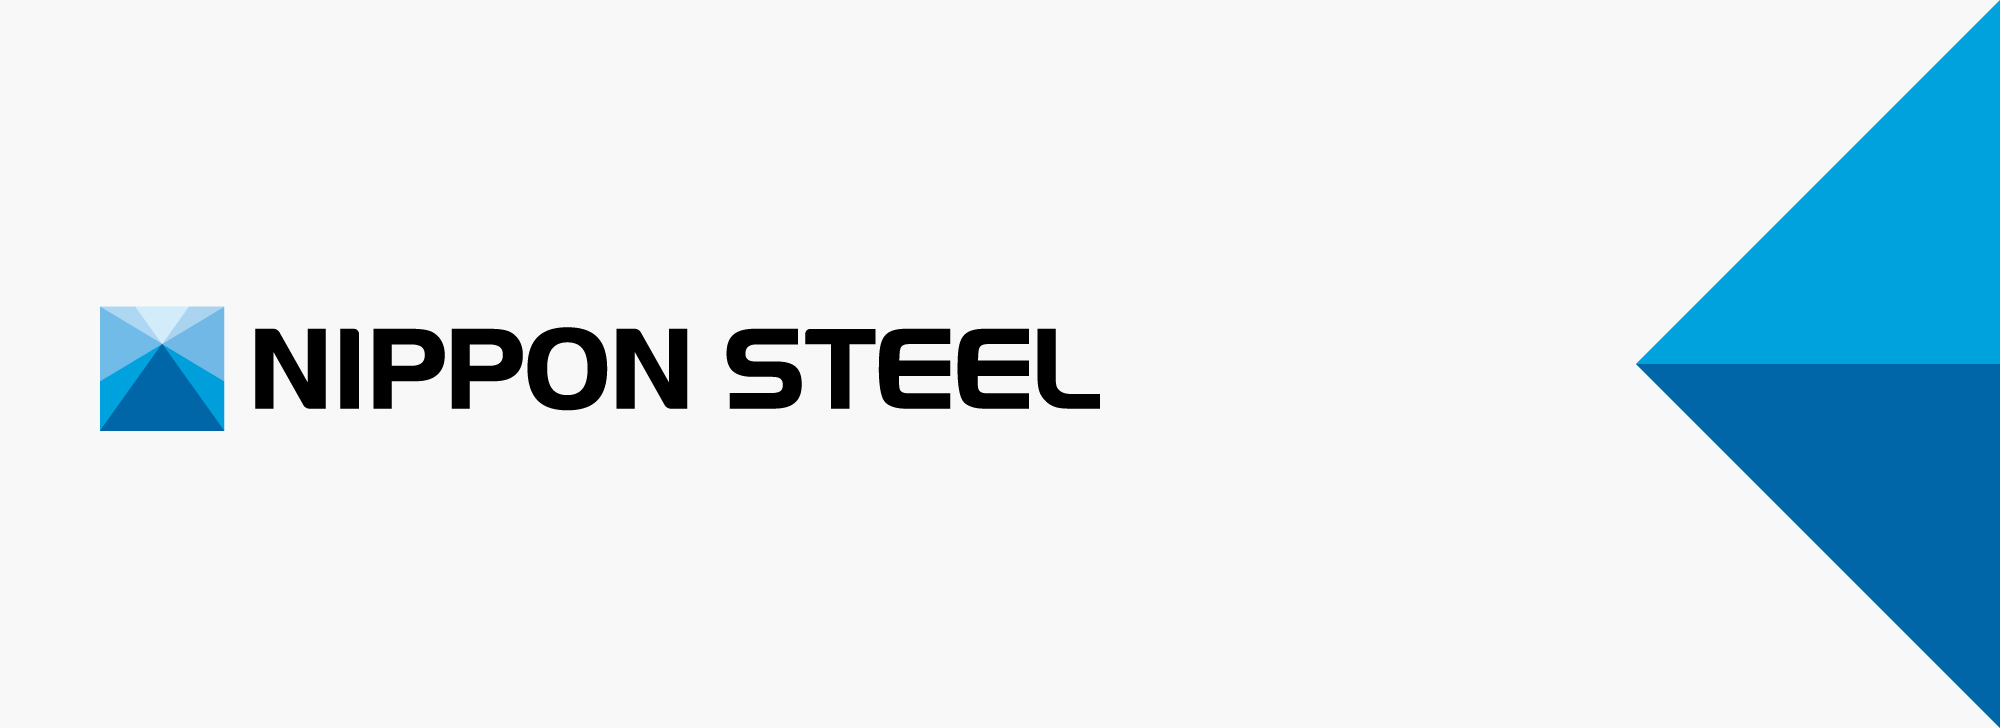 Nippon Steel меняет схему переговоров по ценам срочных контрактов